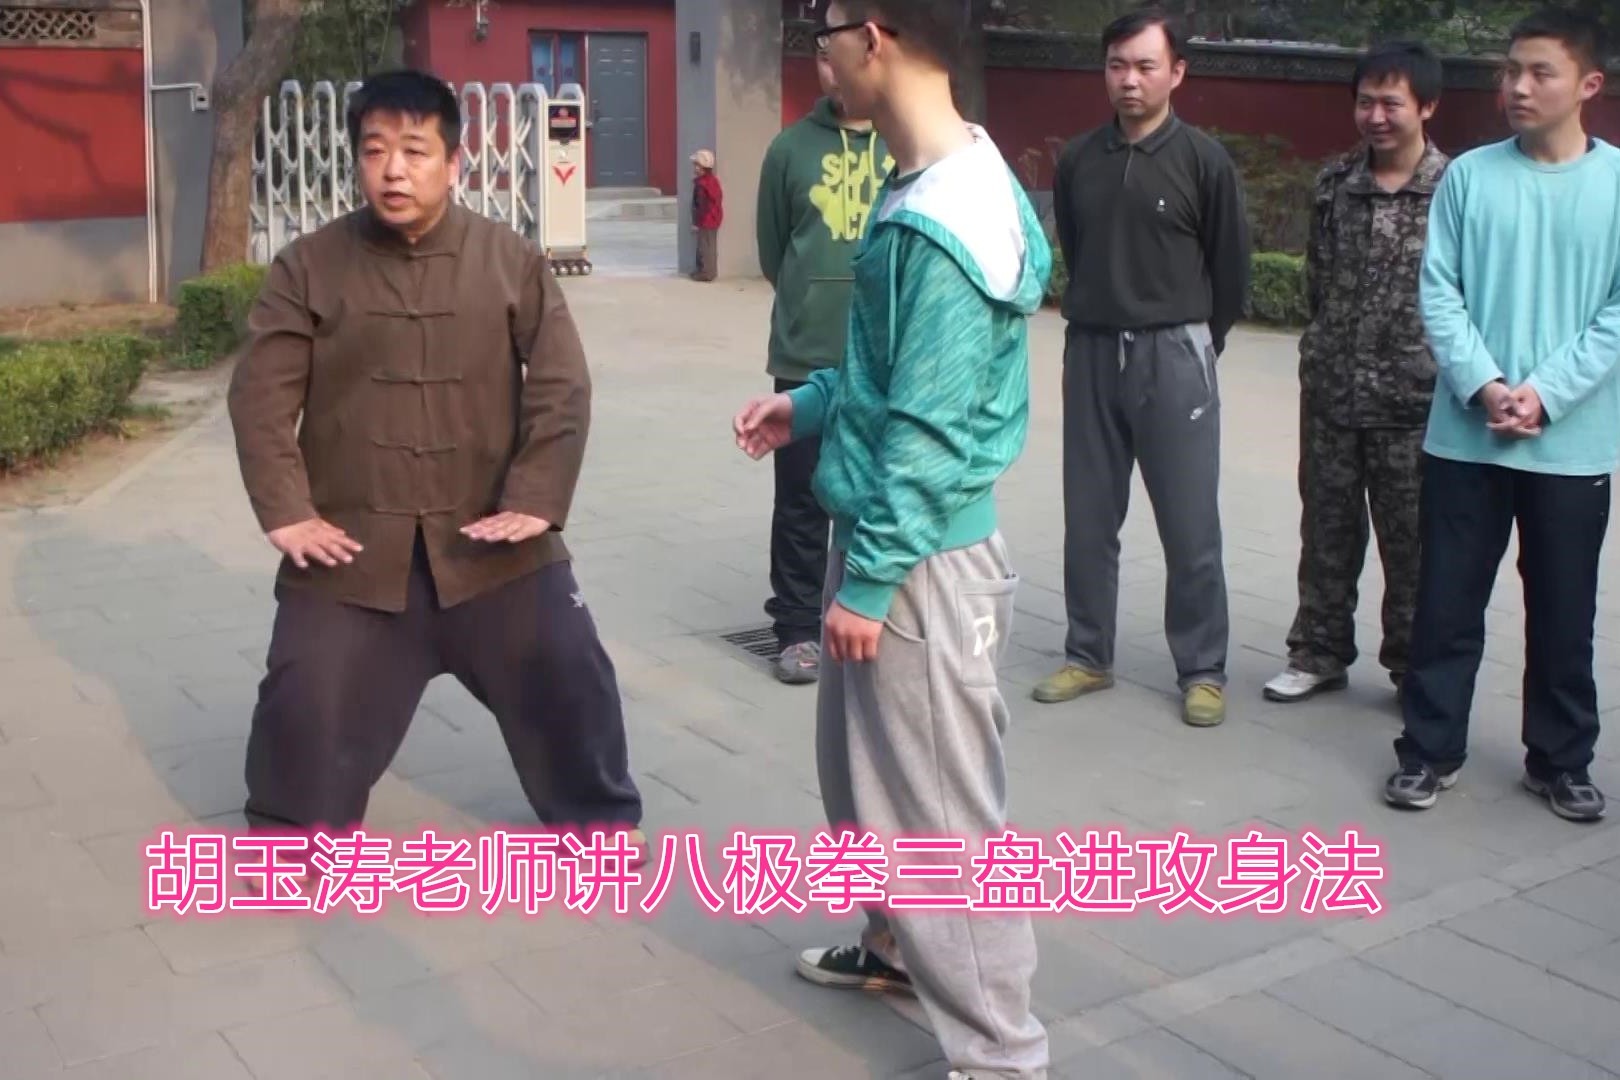 胡玉涛老师讲八极拳三盘进攻身法,熊形的感觉